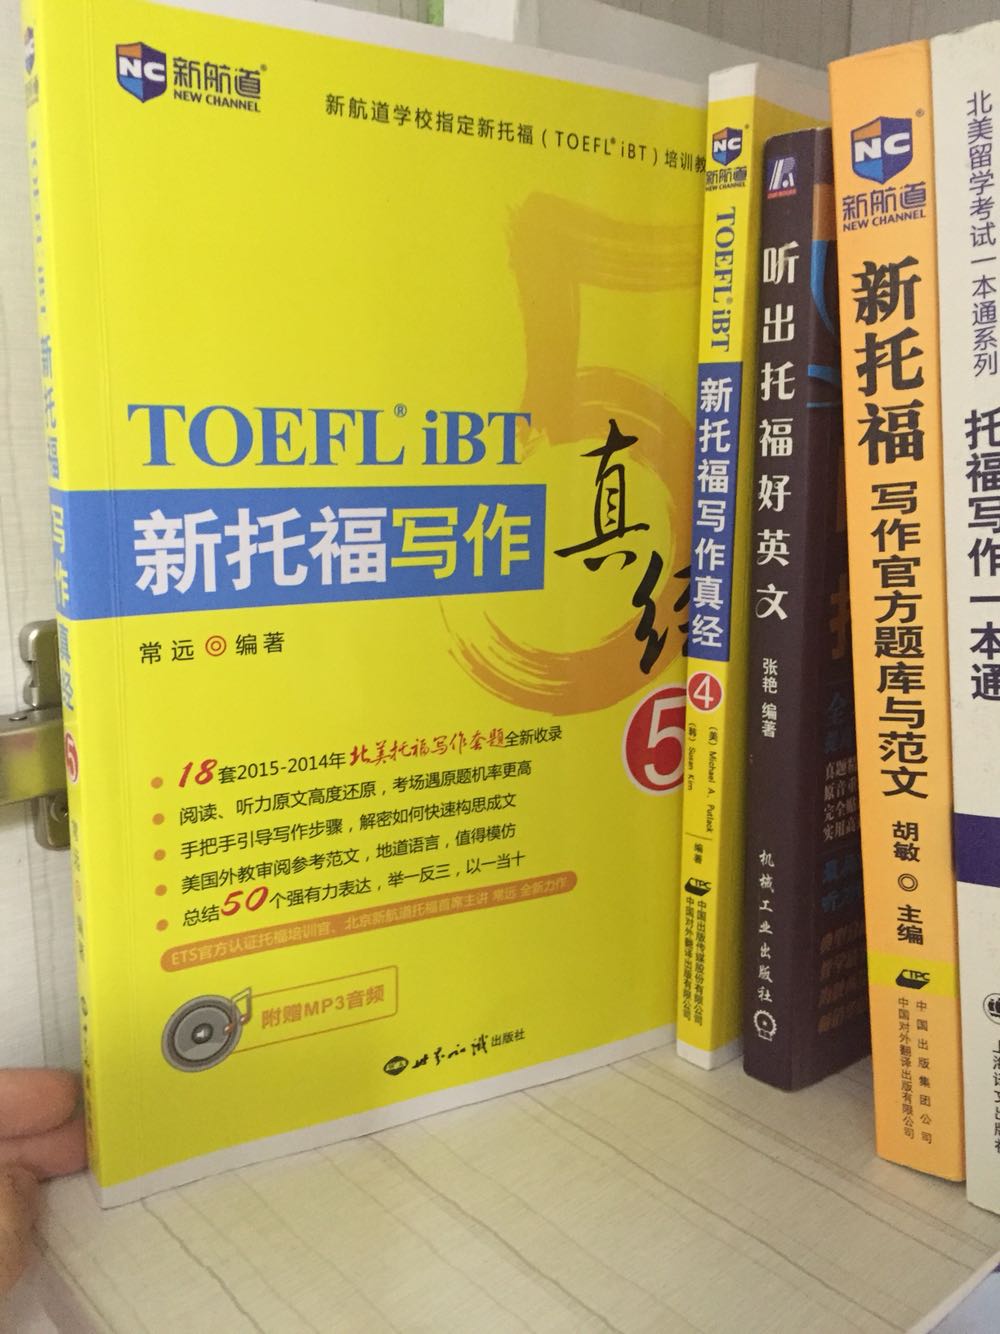 这本书比前面几本都好用 有中文全文和句子功能